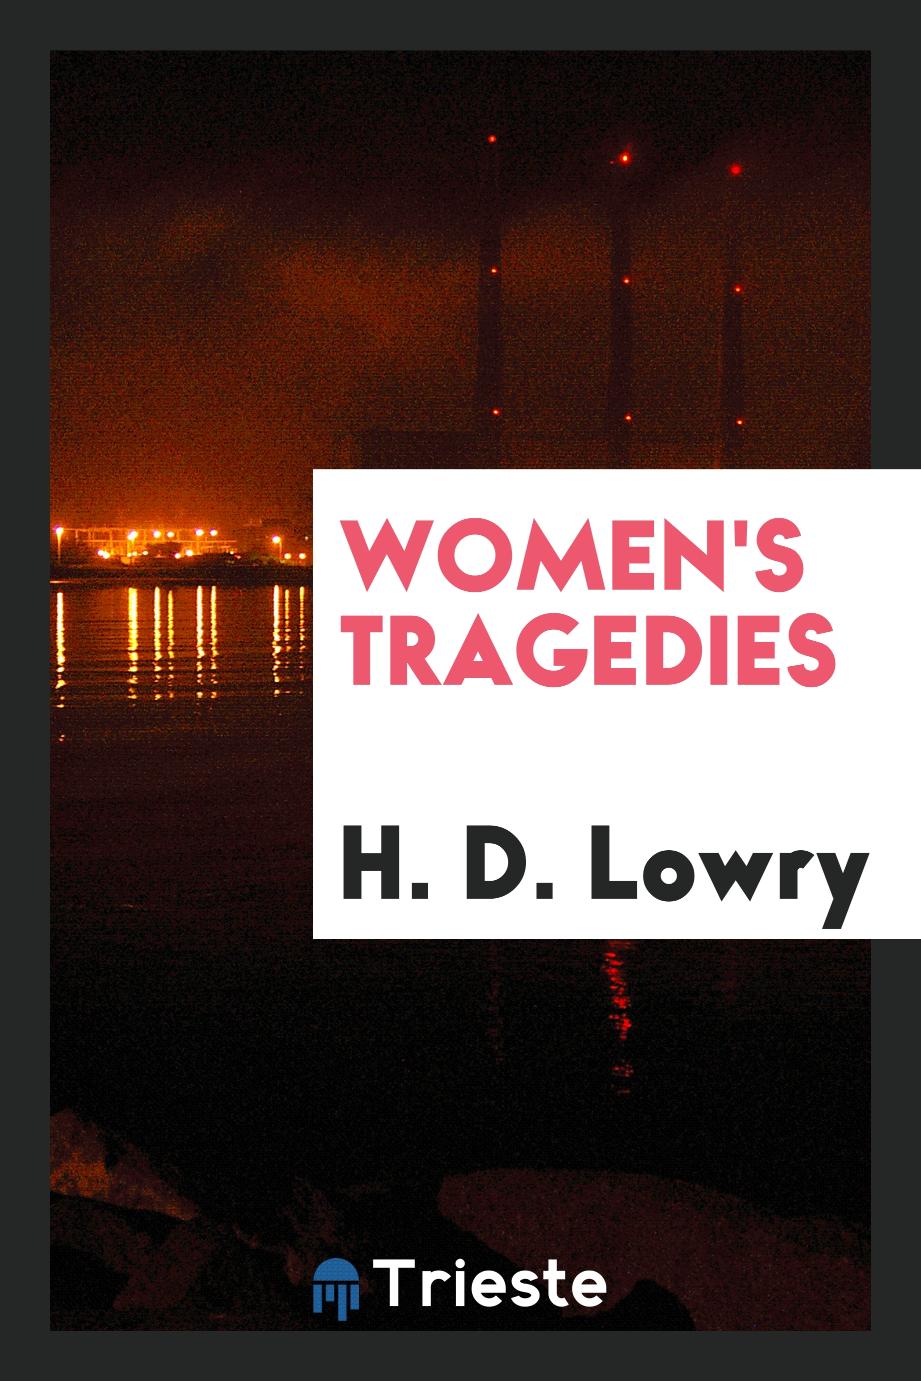 Women's tragedies